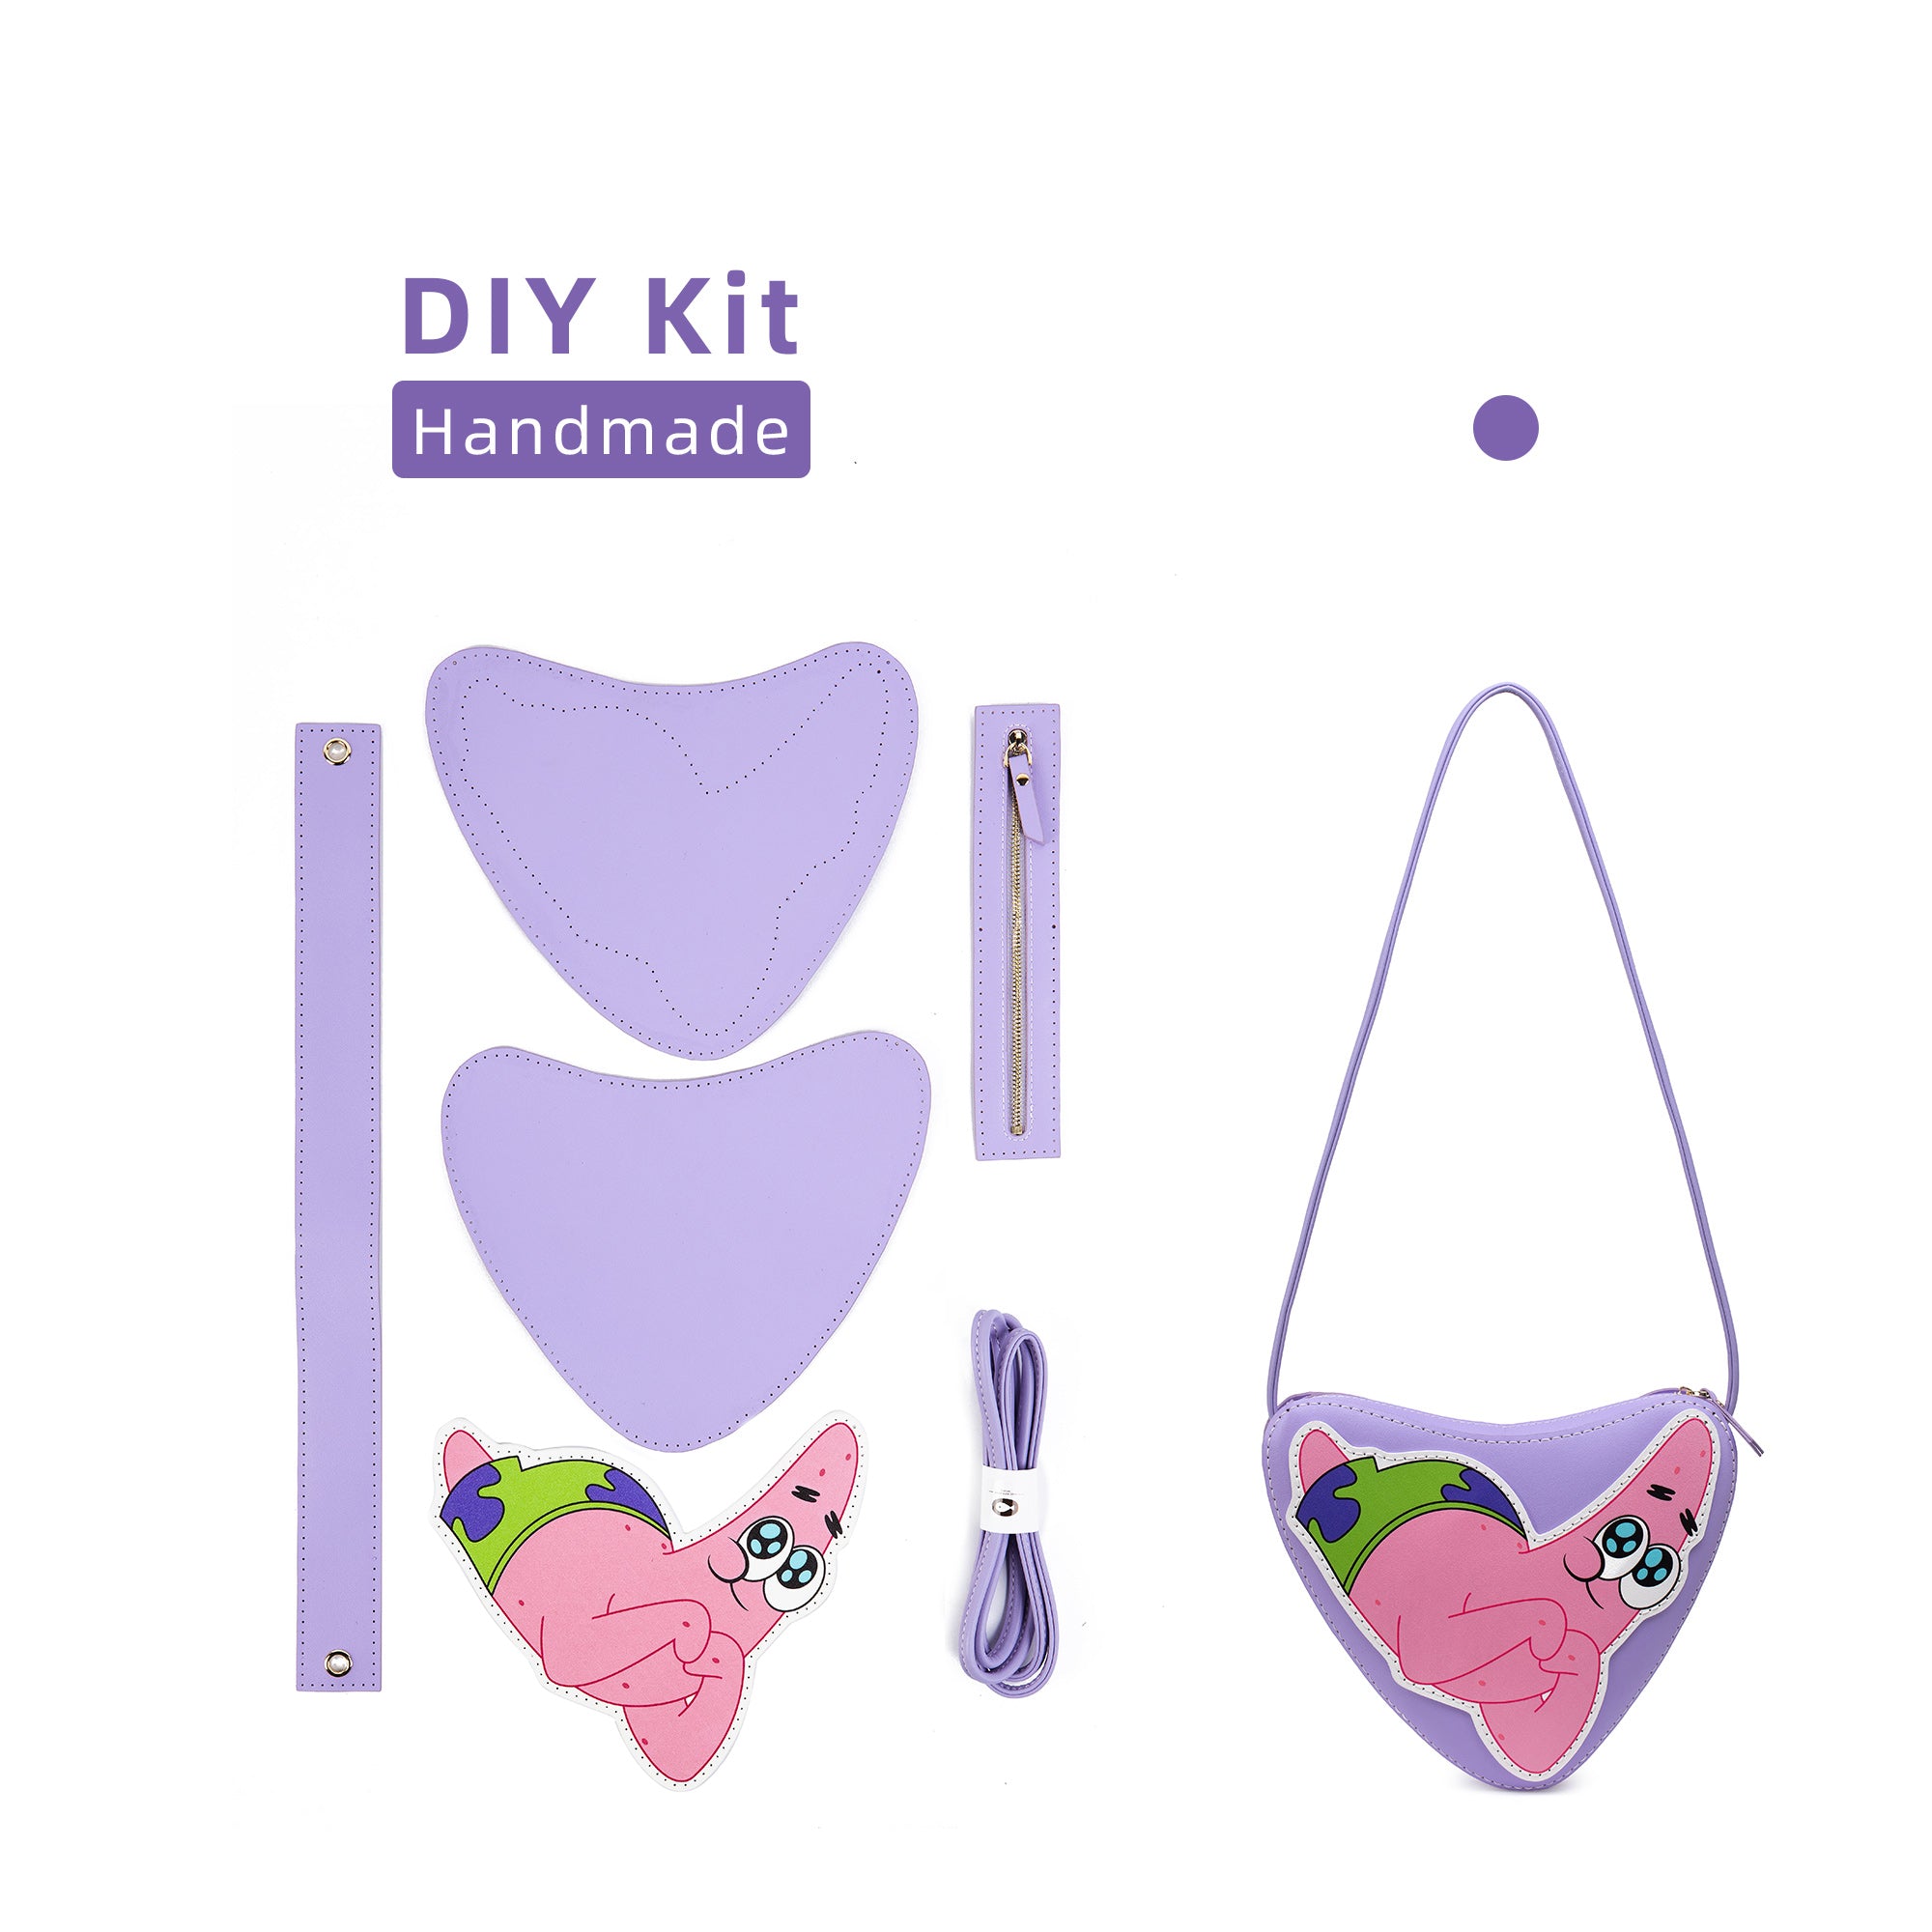 DIY Bag Kits - Patrick Star Love Style Bag